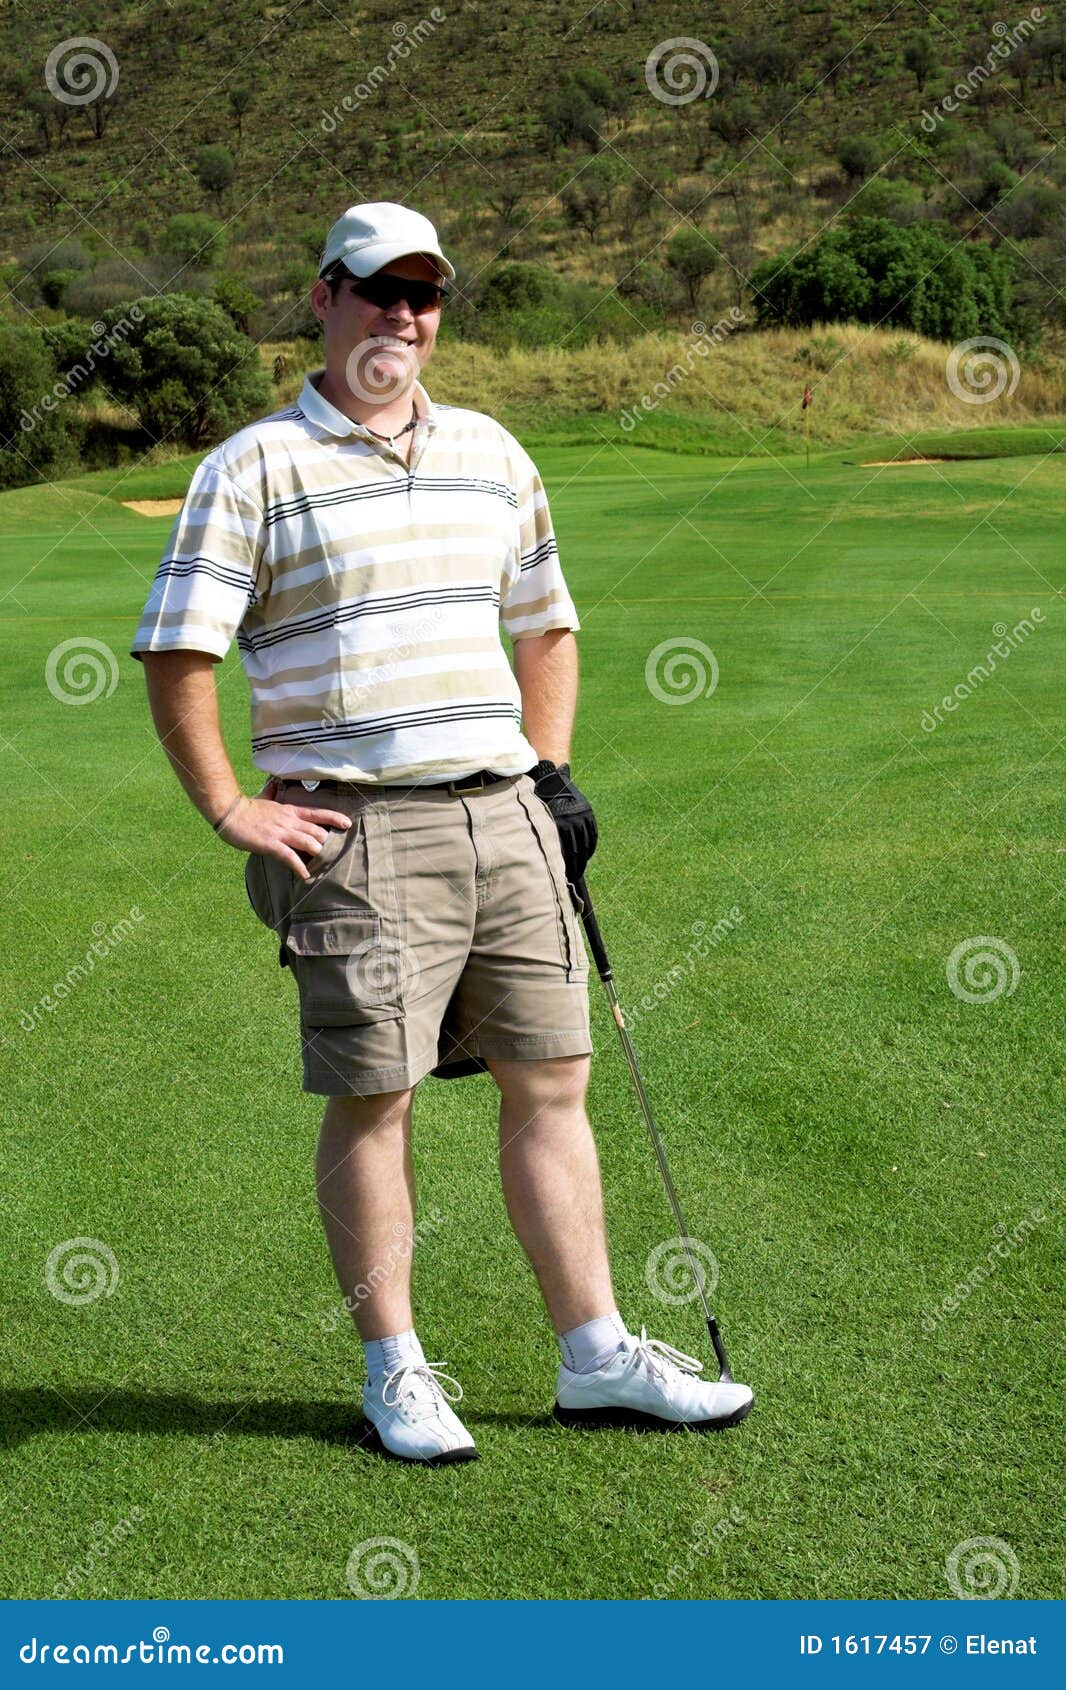 Happy golfer stock image. Image of strike, grassy, golf - 1617457